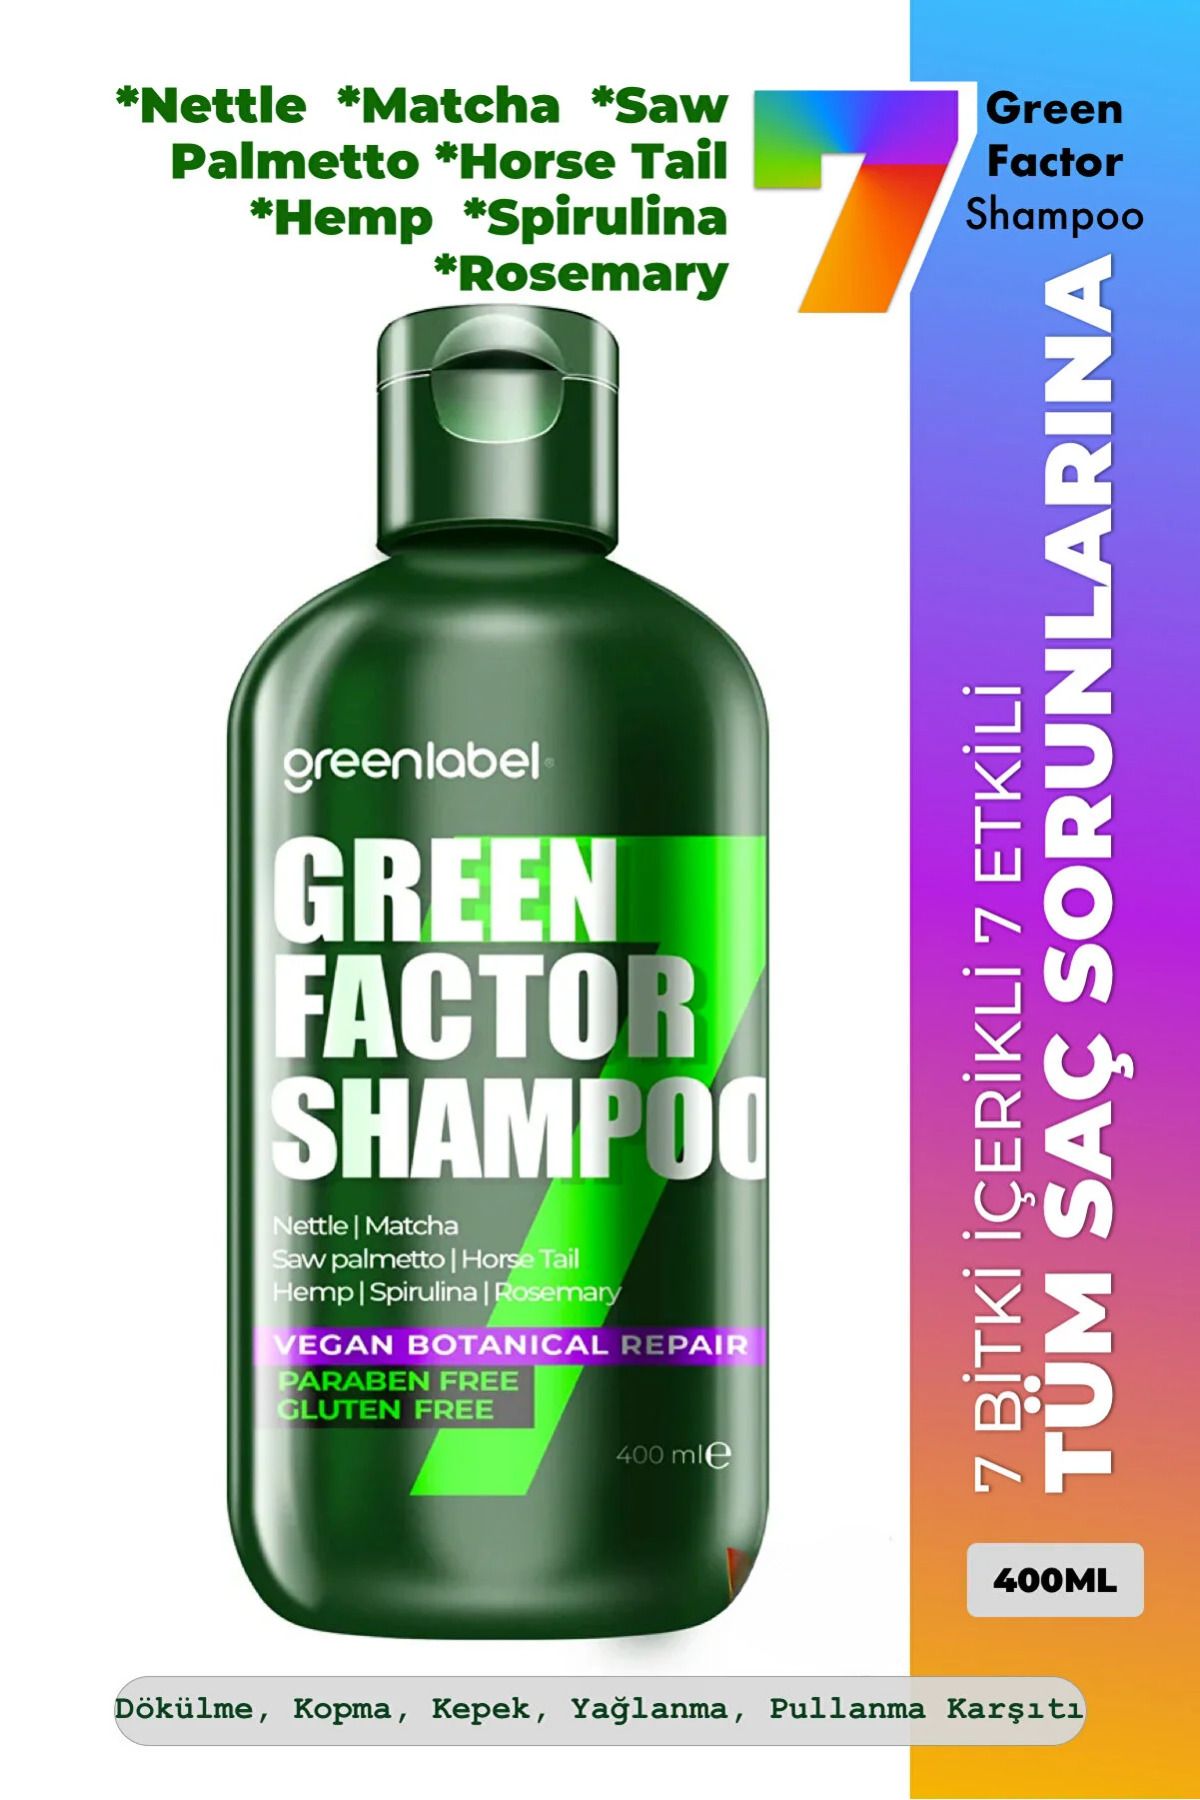 Green Label Green Factor 7 Bitkili Vegan Parabensiz Glutensiz Onarıcı Ve Yoğun Bakım Şampuanı 400ml.